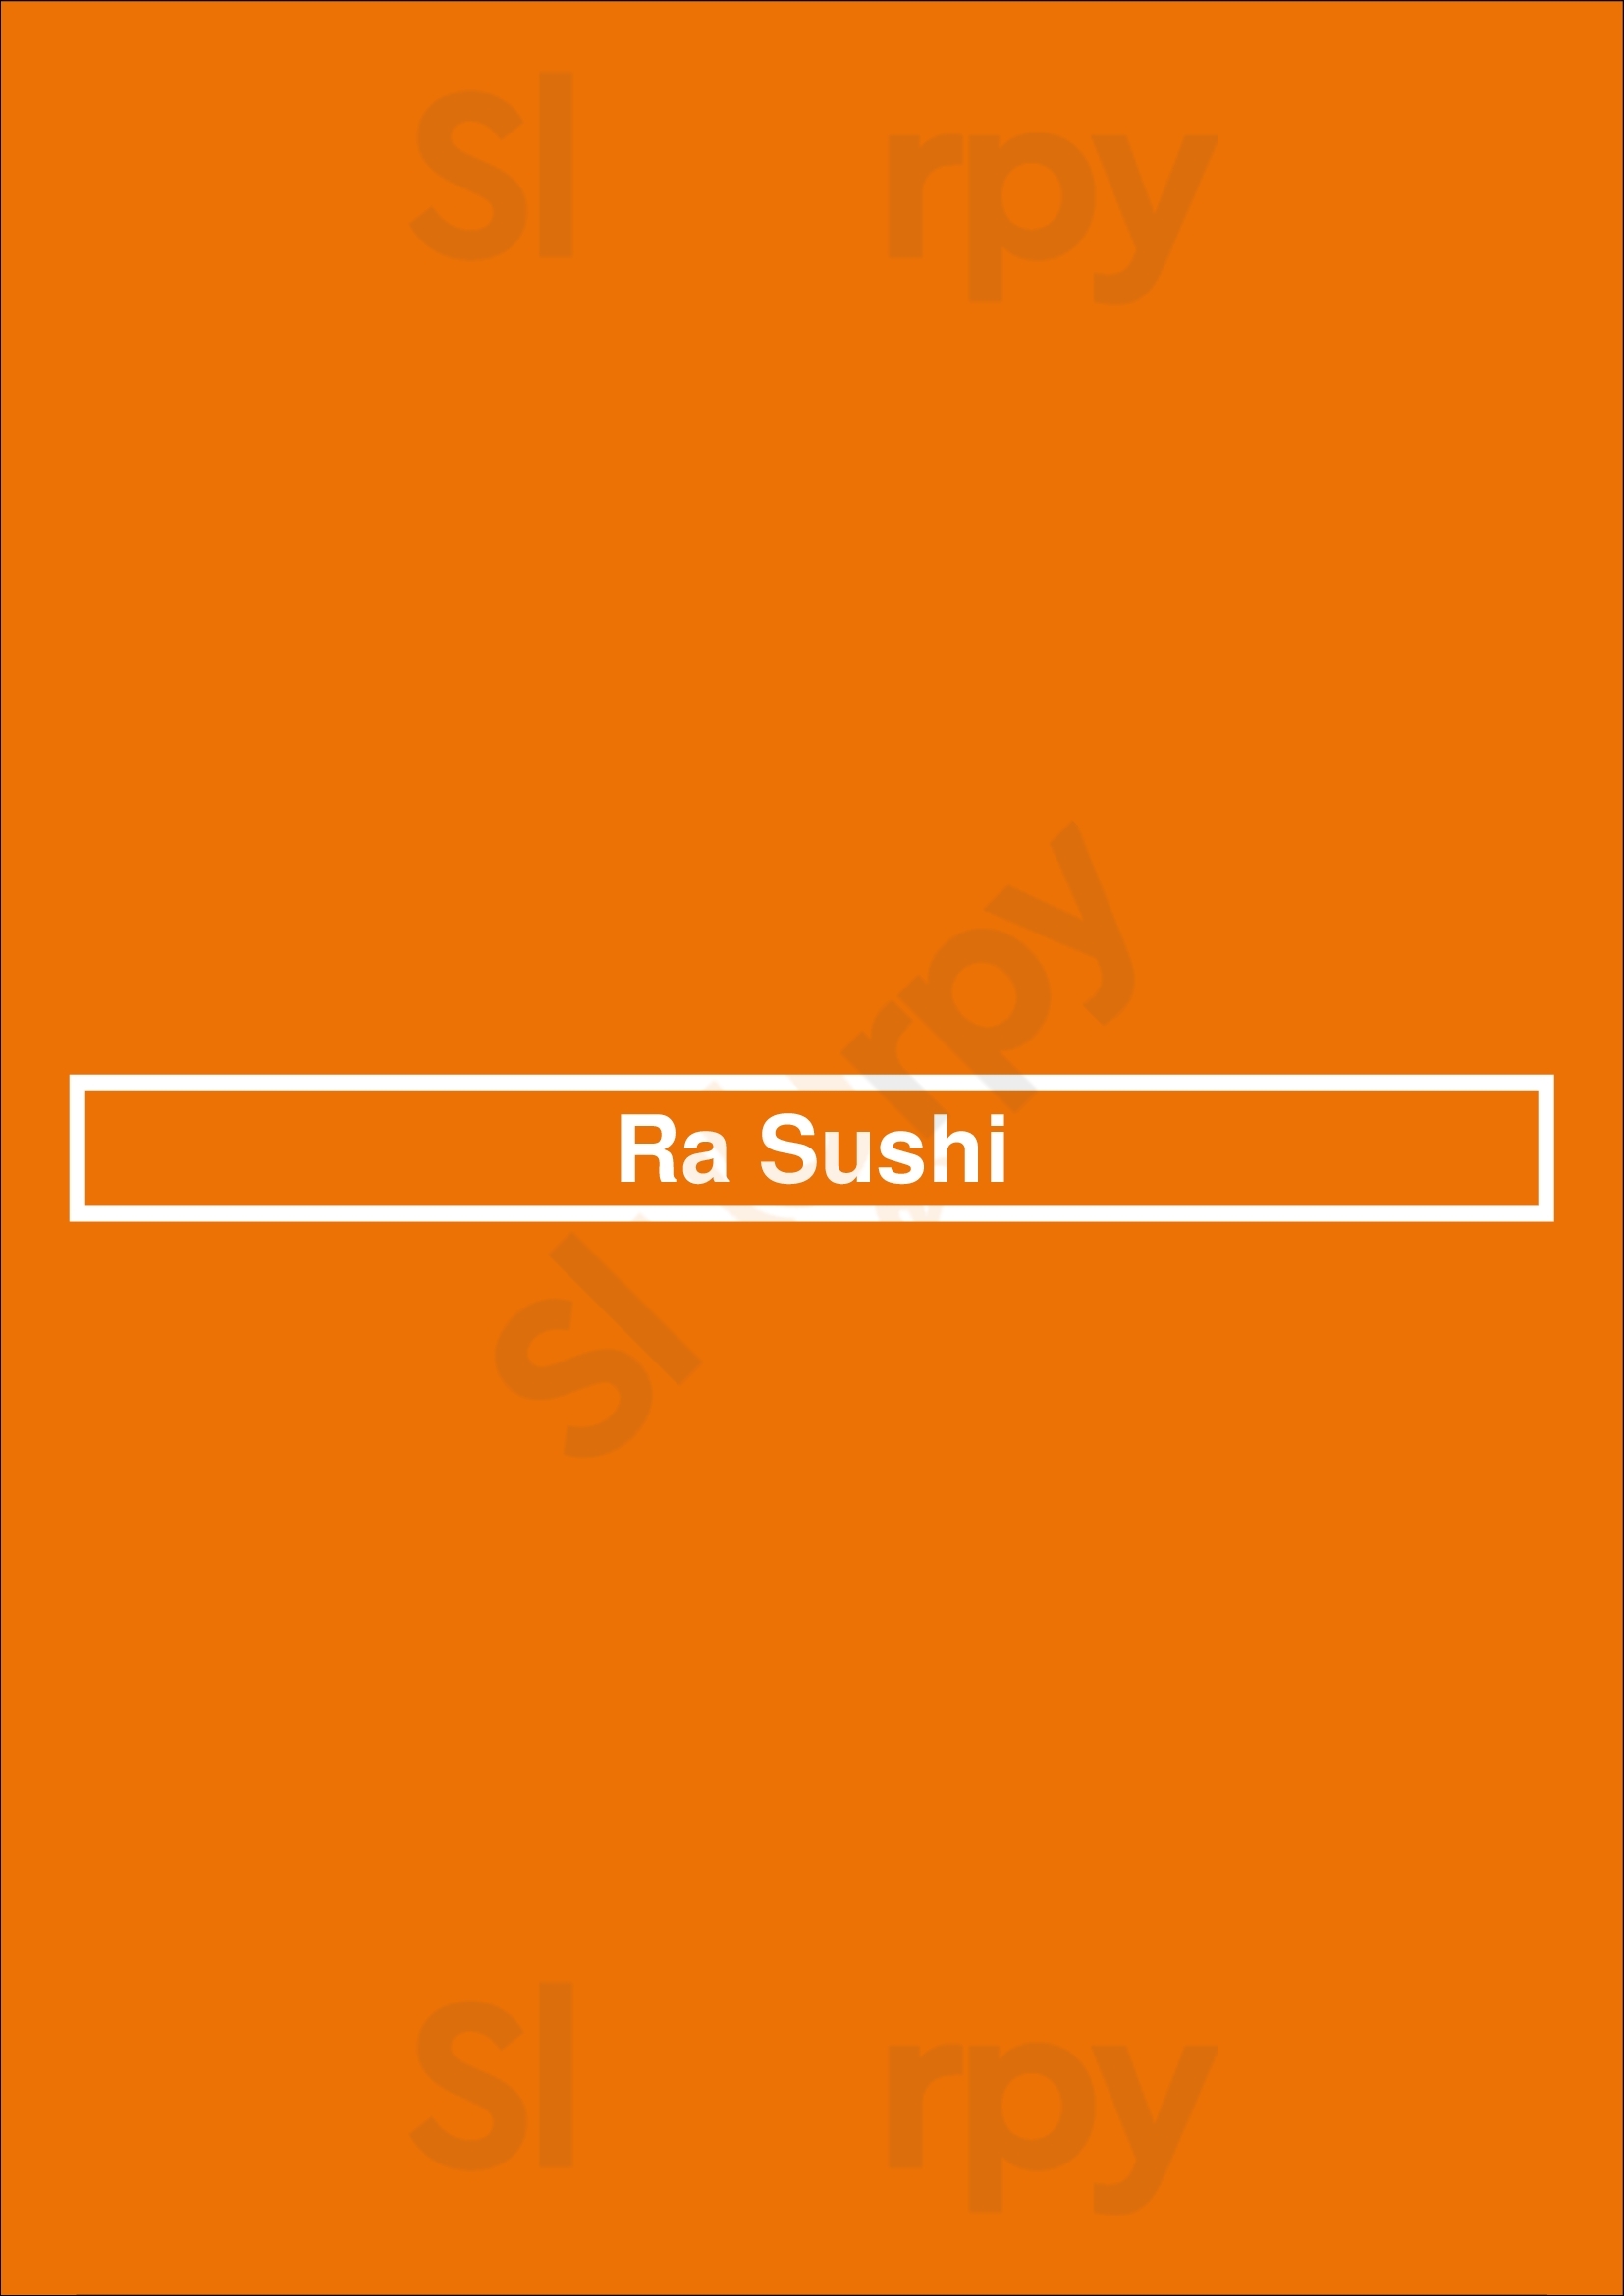 Ra Sushi Bar Restaurant Mesa Menu - 1